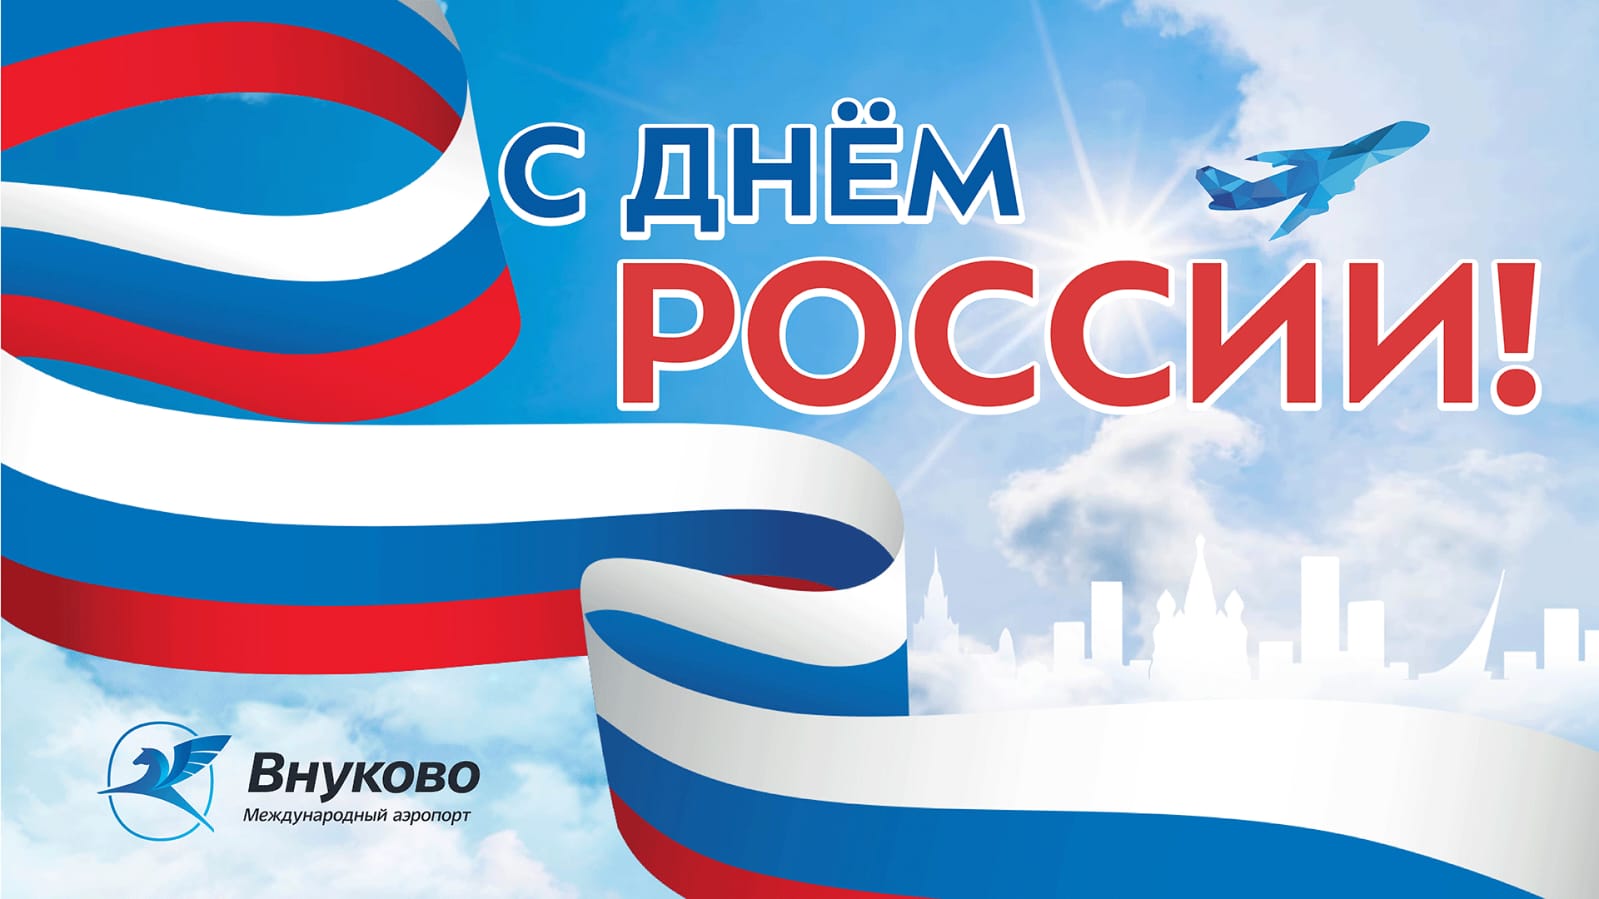 Международный аэропорт Внуково поздравляет с Днем России!